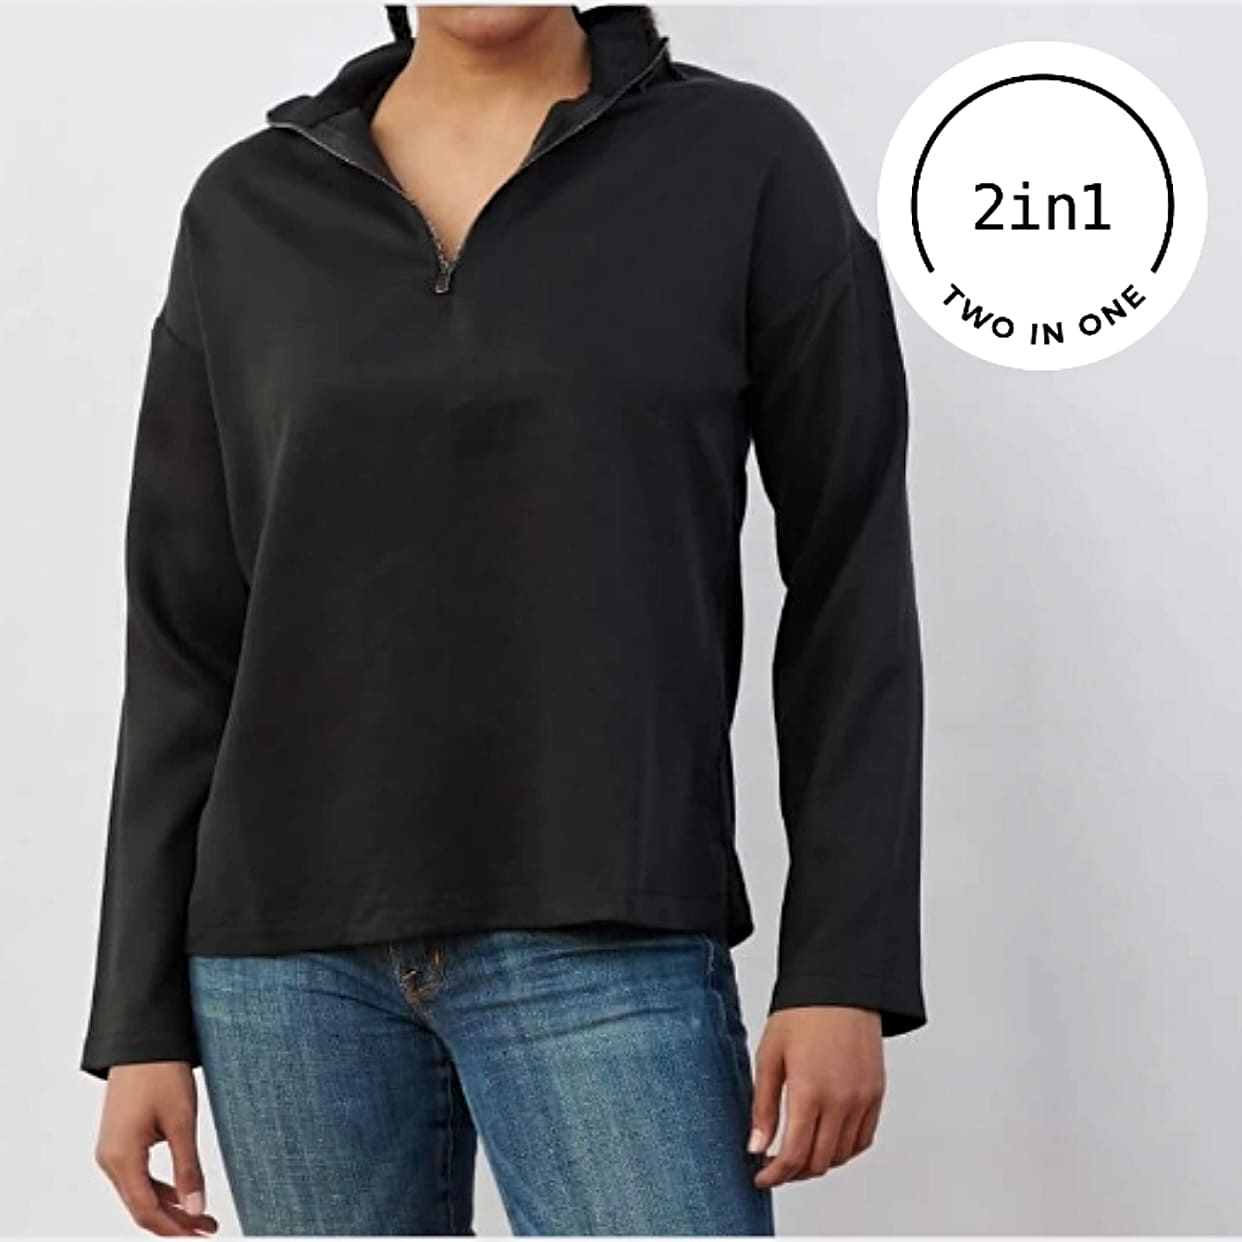 Schwarze 2IN1-Bluse mit geöffnetem Reißverschluss an Frauenkörper mit weißem rundem 2IN1-Icon